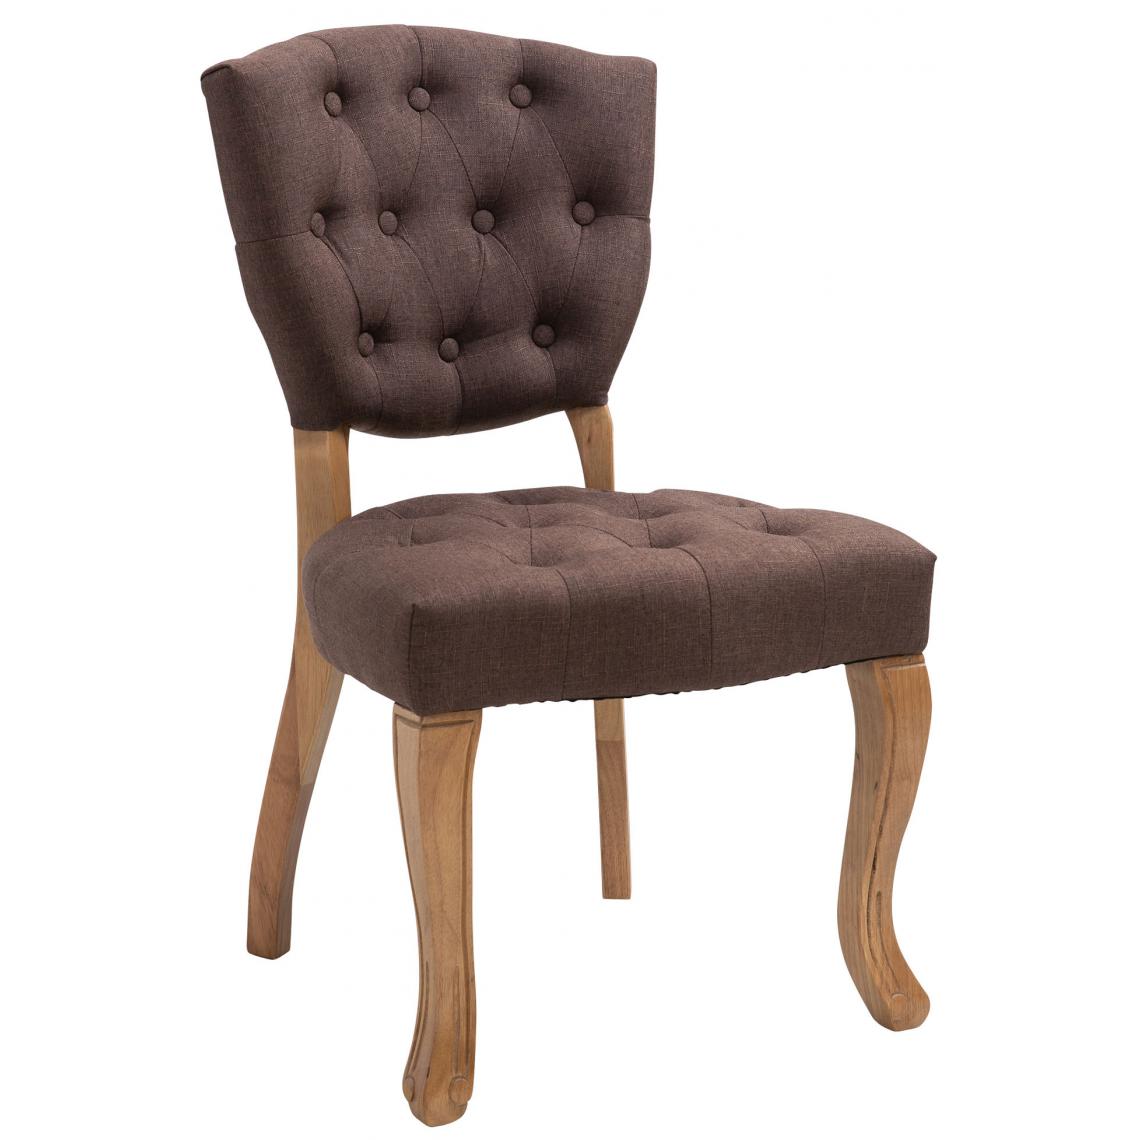 Icaverne - Splendide Chaise de salle à manger edition Managua tissu antique-clair couleur marron - Chaises